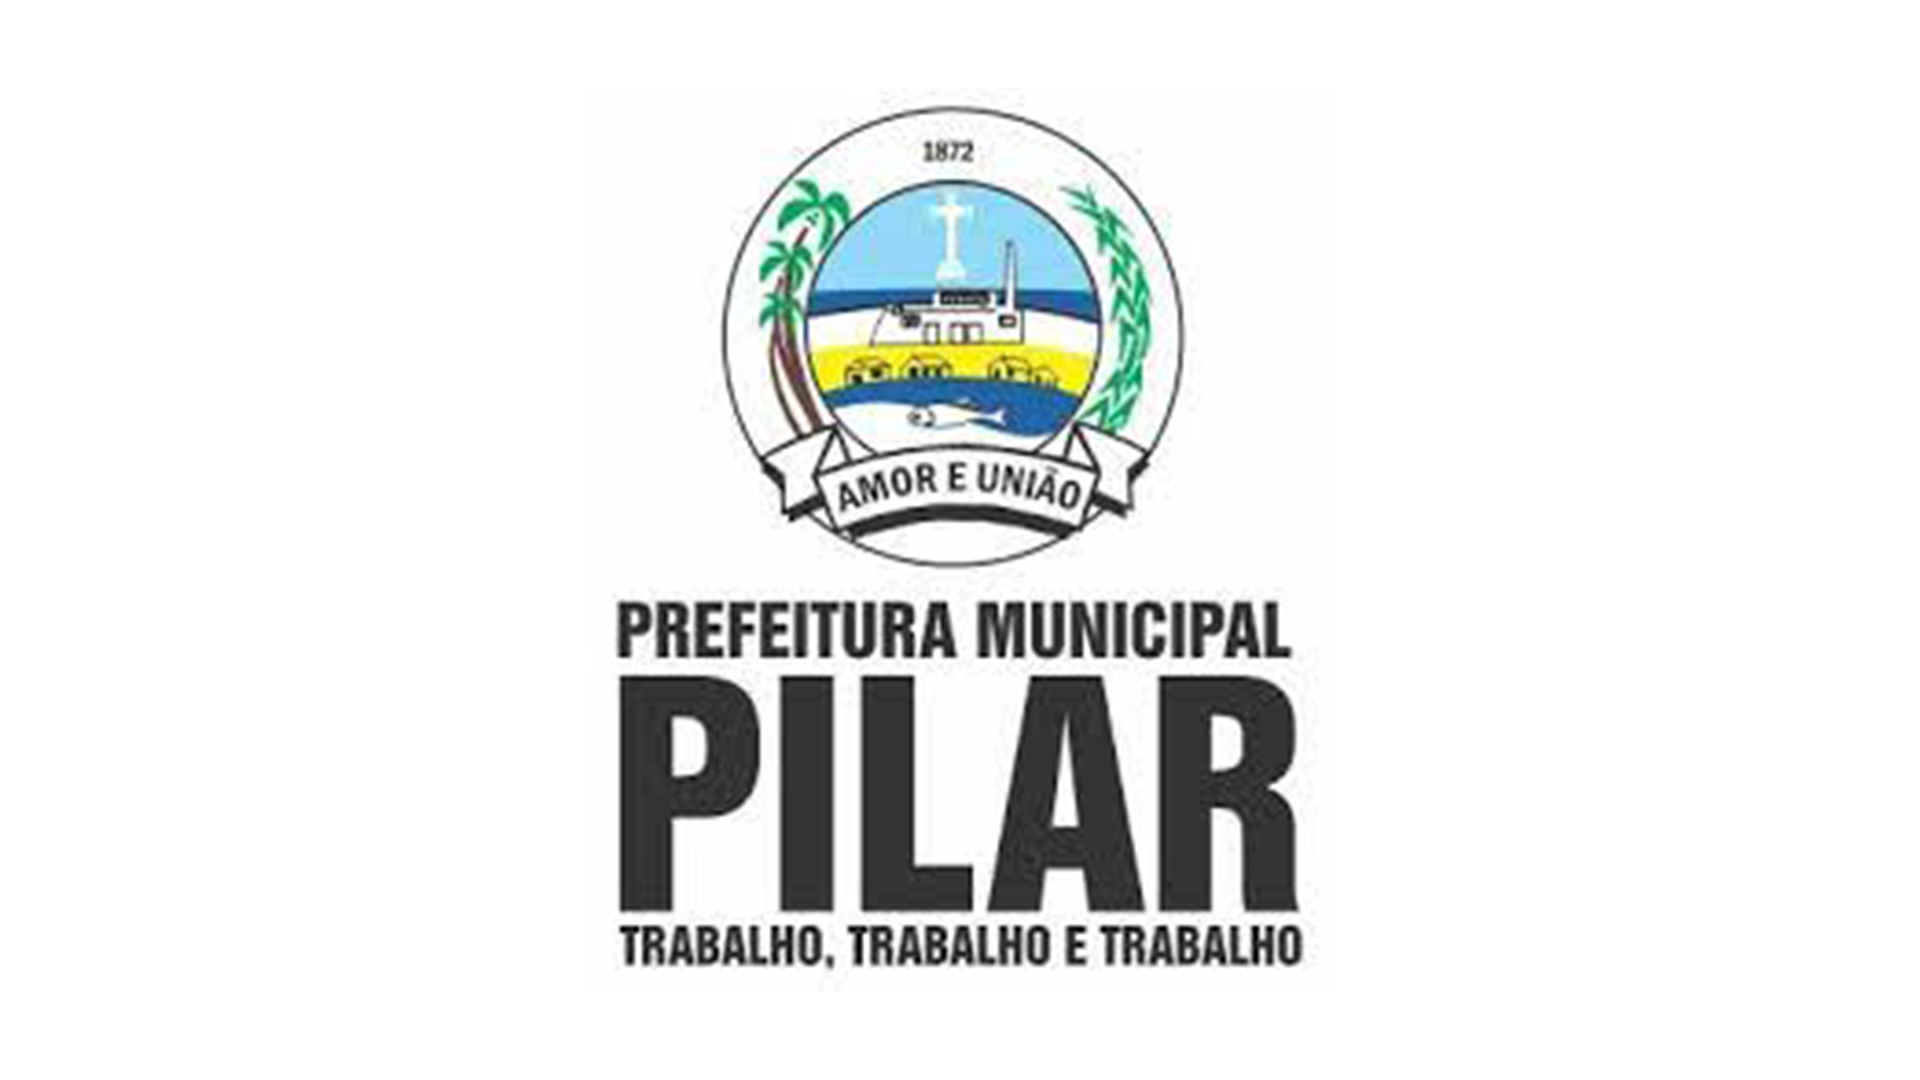 Prefeitura Pilar